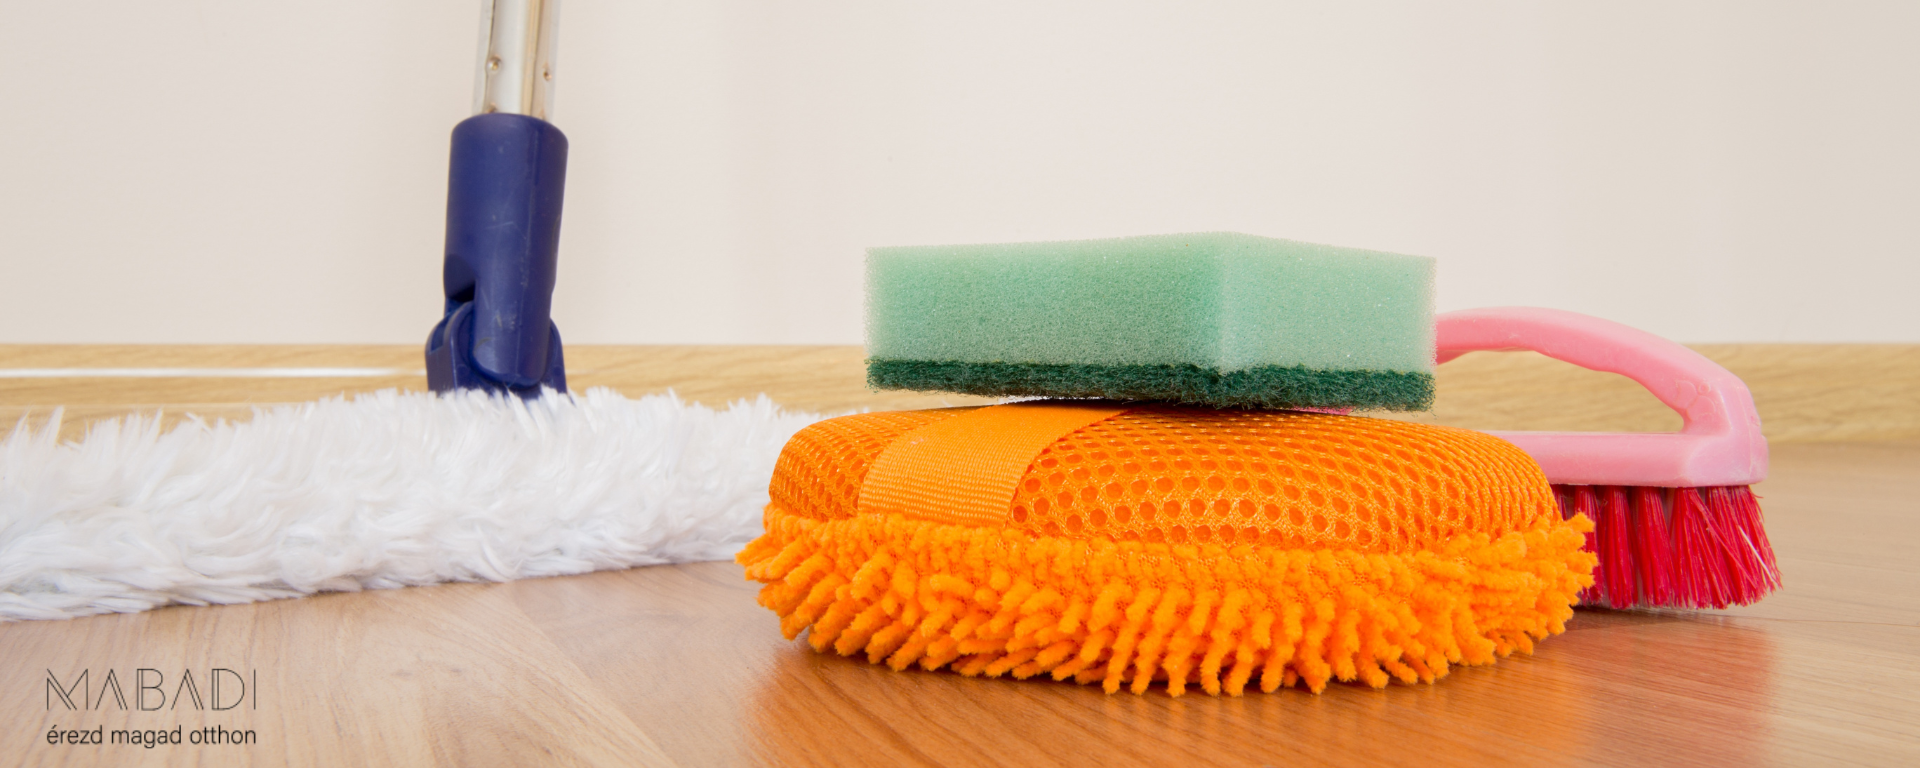 Az otthonod tisztaságáért válaszd a megfelelő felmosót!